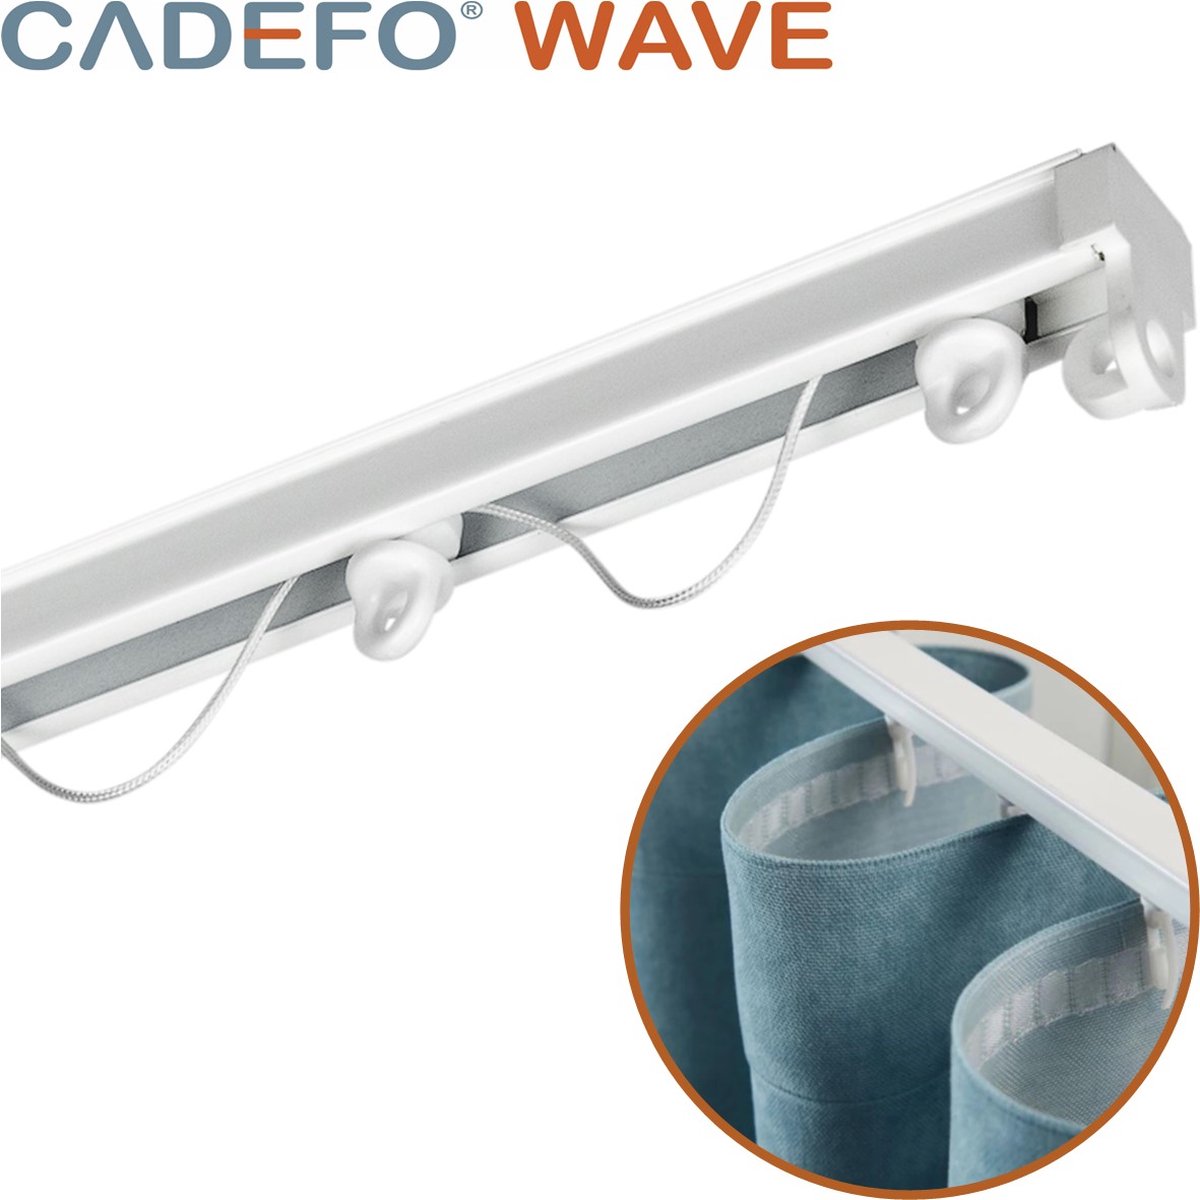 CADEFO WAVE (501 - 550 cm) Gordijnrails - Compleet op maat! - UIT 1 STUK - Leverbaar tot 6 meter - Plafondbevestiging - Lengte 535 cm